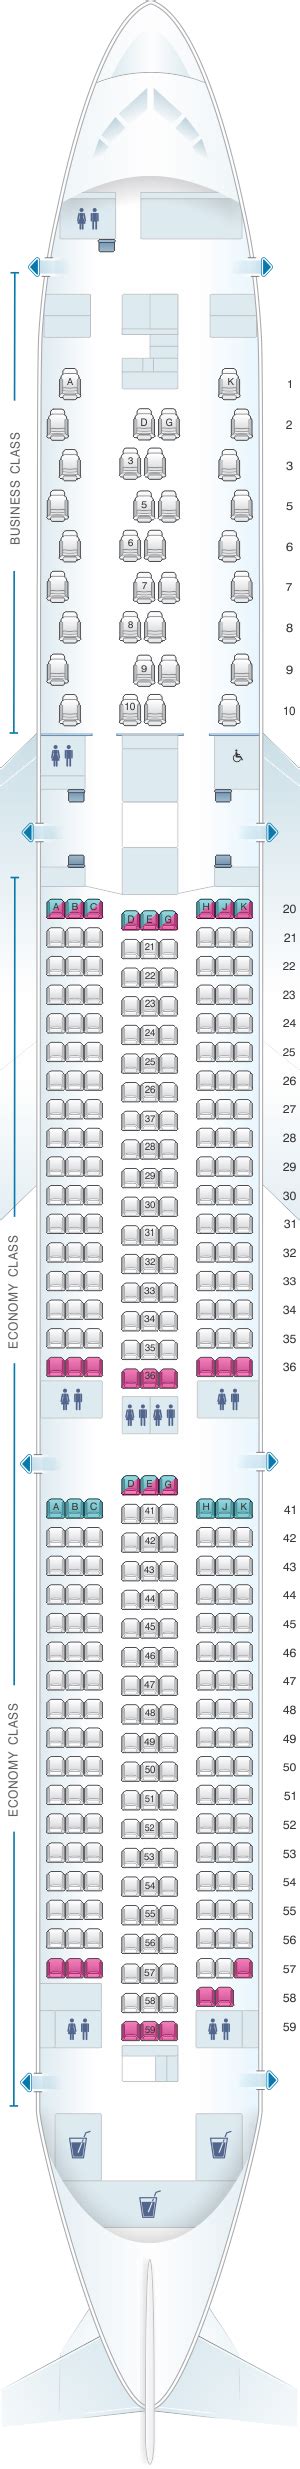 eva air seat map 787-10